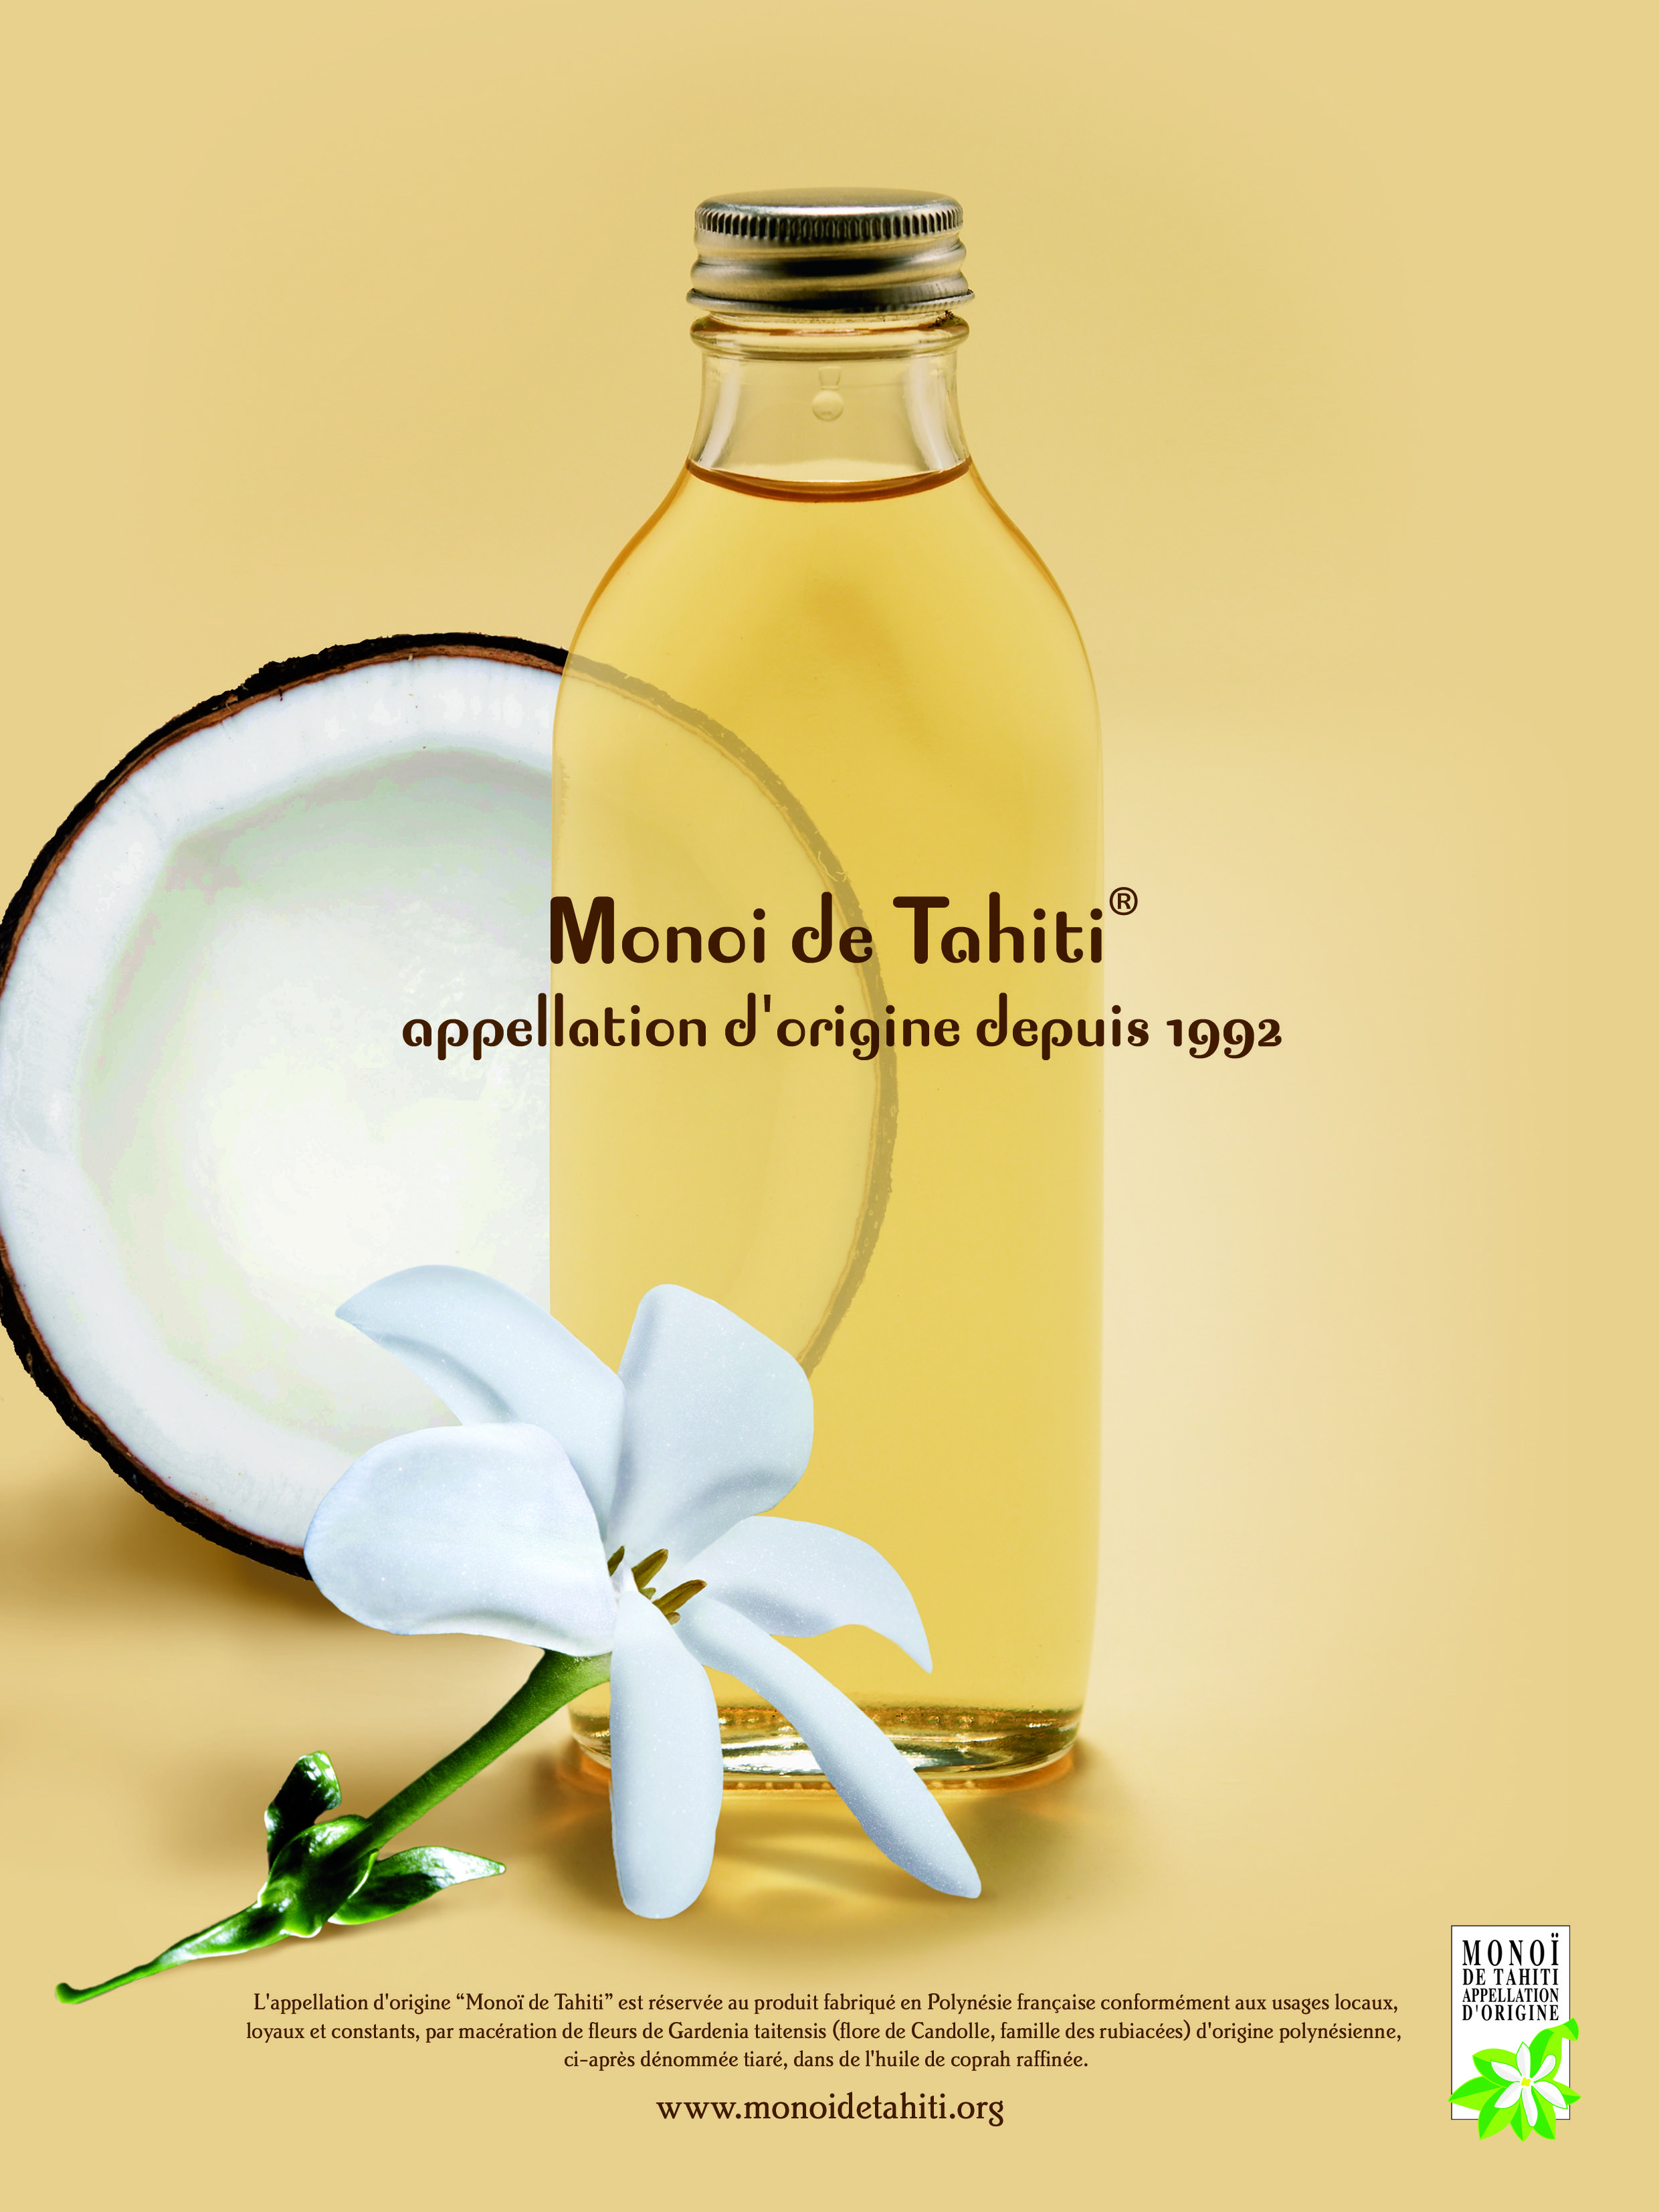 En 2022, le Monoï de Tahiti fêtera les 30 ans de son appellation d'origine